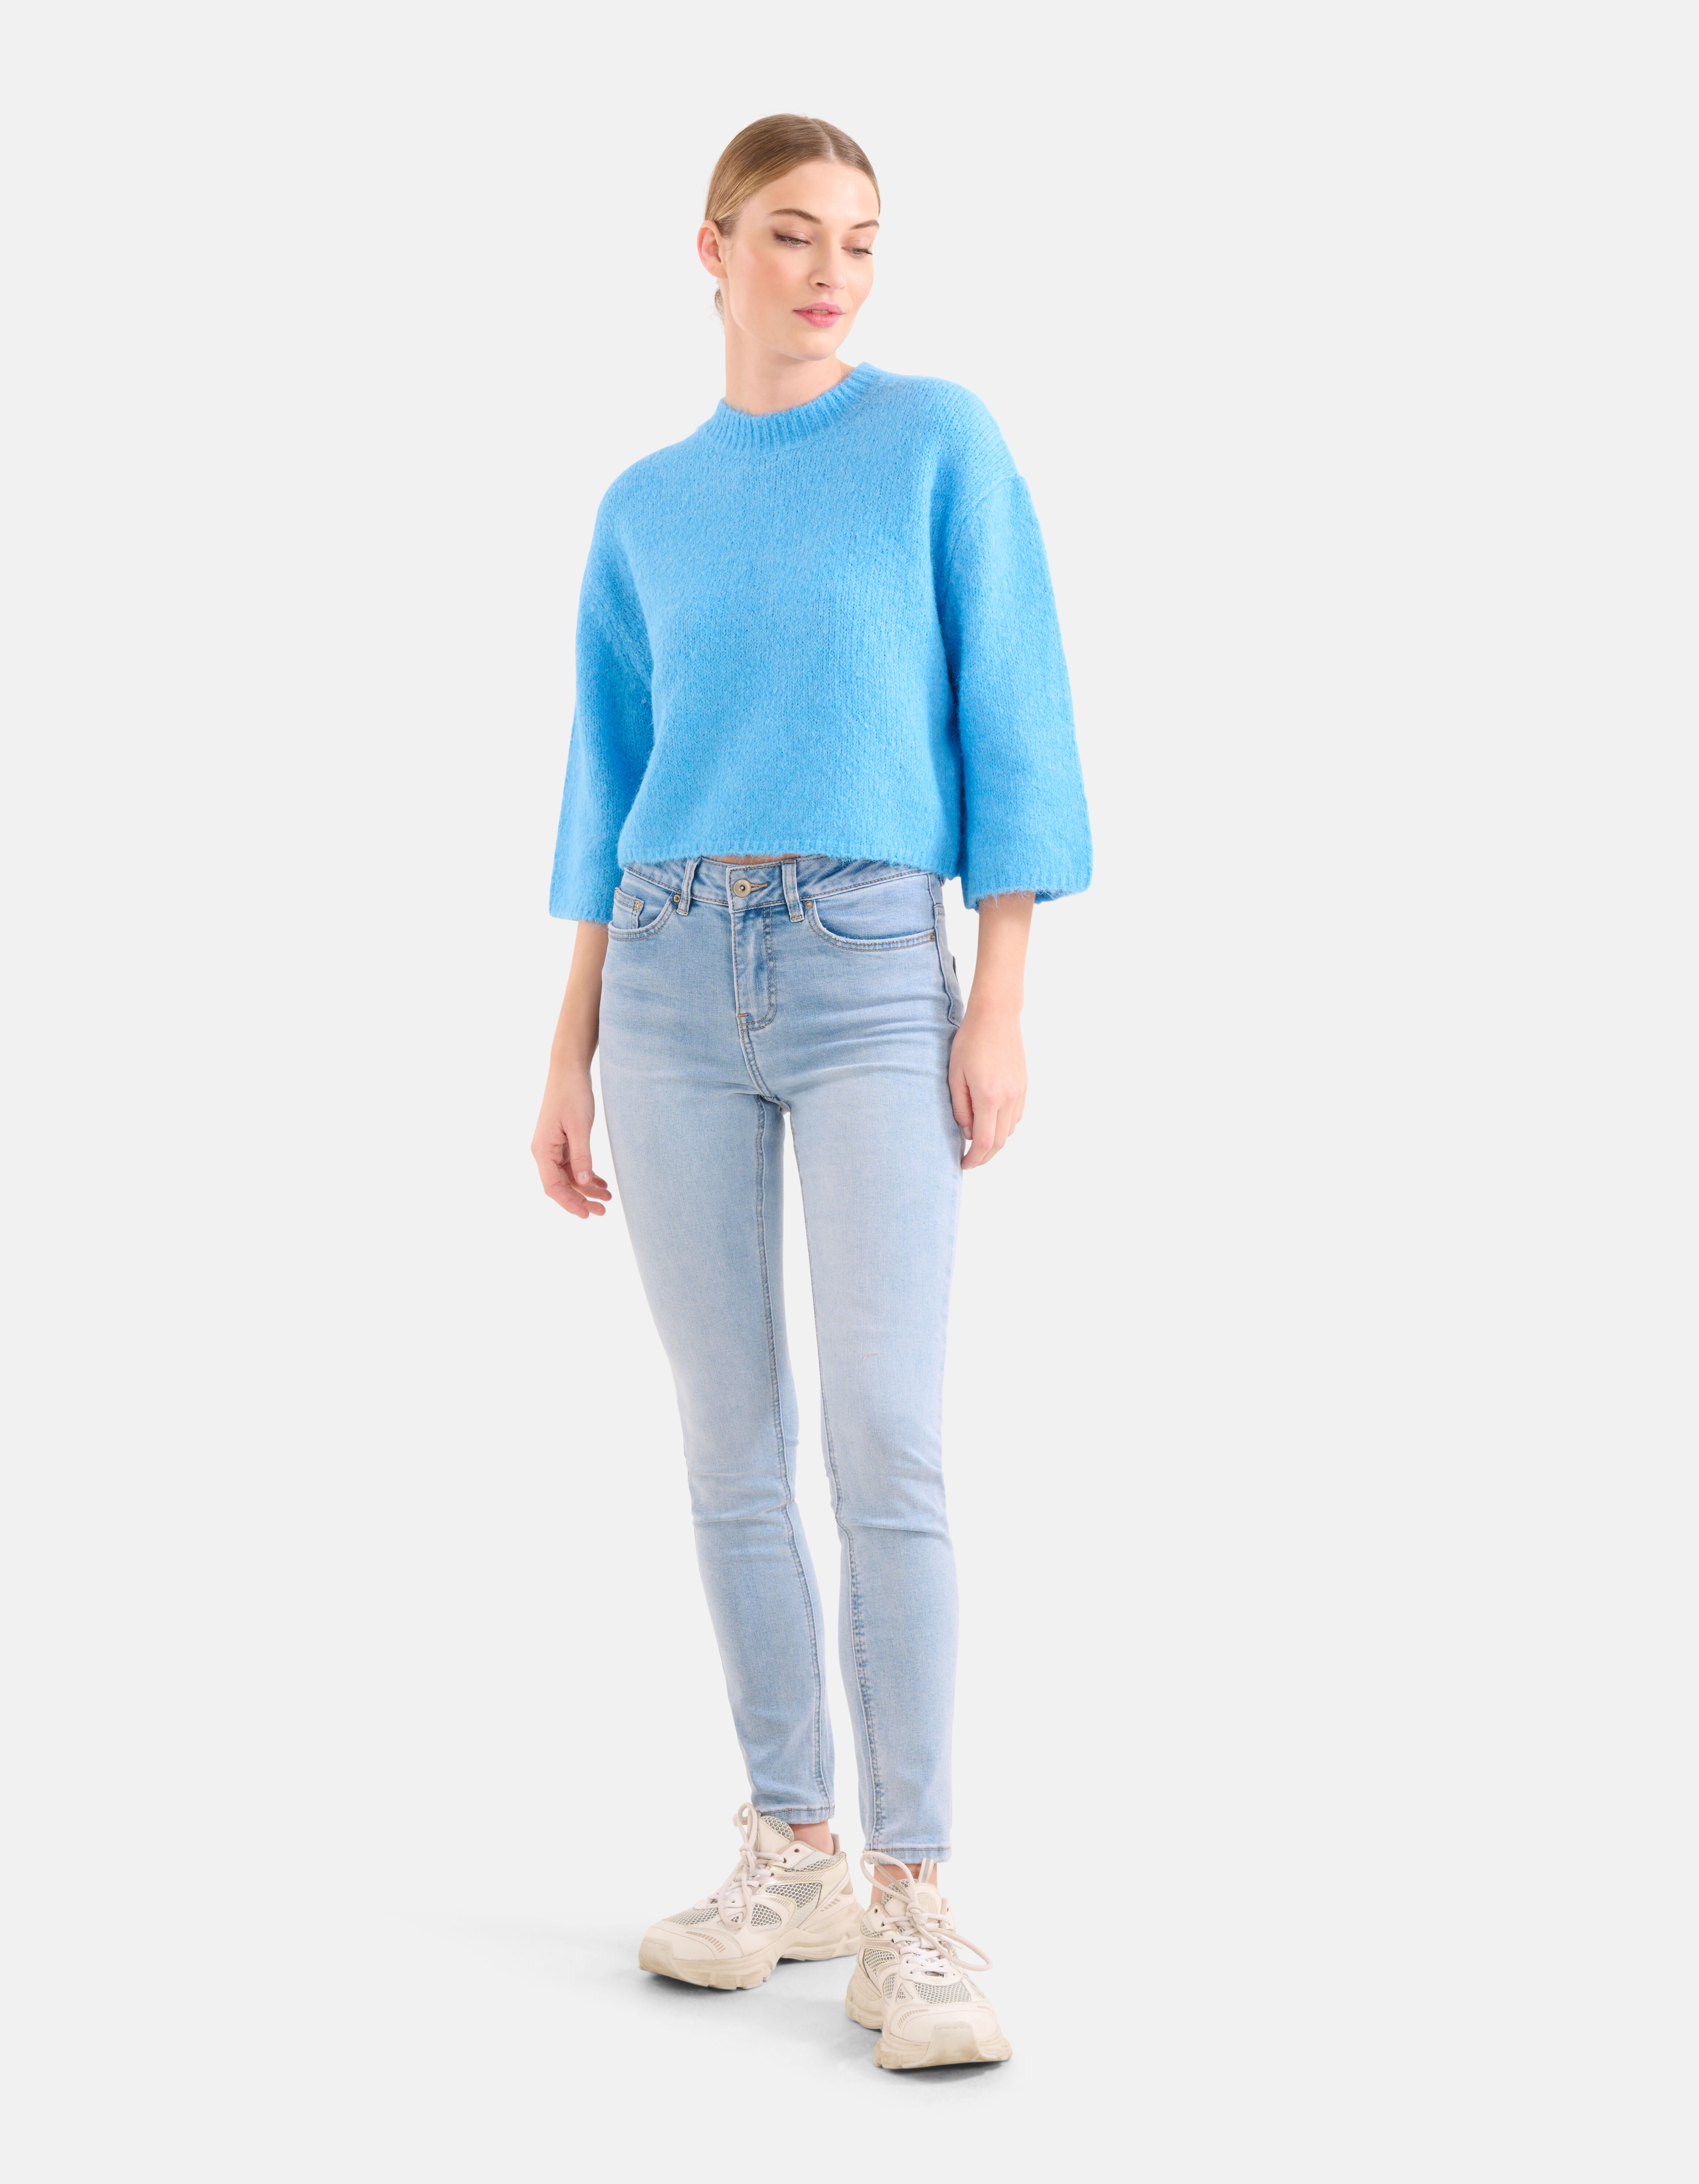 Verwaand gaan beslissen Leerling Dames jeans online kopen. Ontdek nu de collectie | Shoeby | Koop nu online  | Shoeby